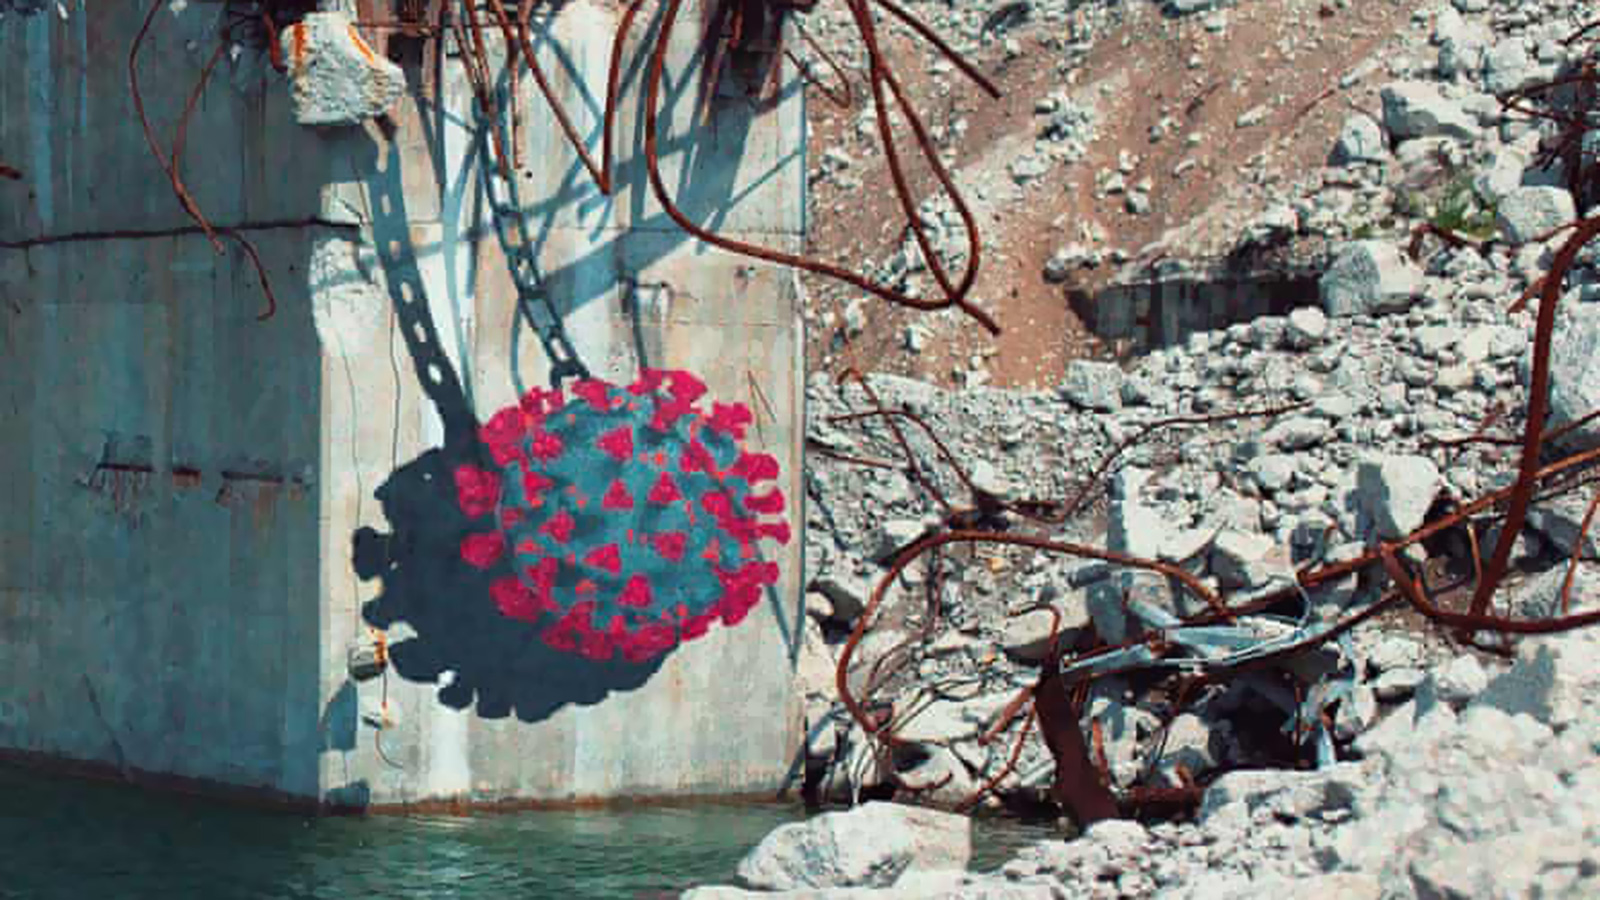 ‪الفنان شون يورو اختار موقعا متهدما من شاطئ ورسم على أحد الأعمدة الخرسانية الموجودة فيه خلية فيروس كورونا‬ (مواقع التواصل الاجتماعي)